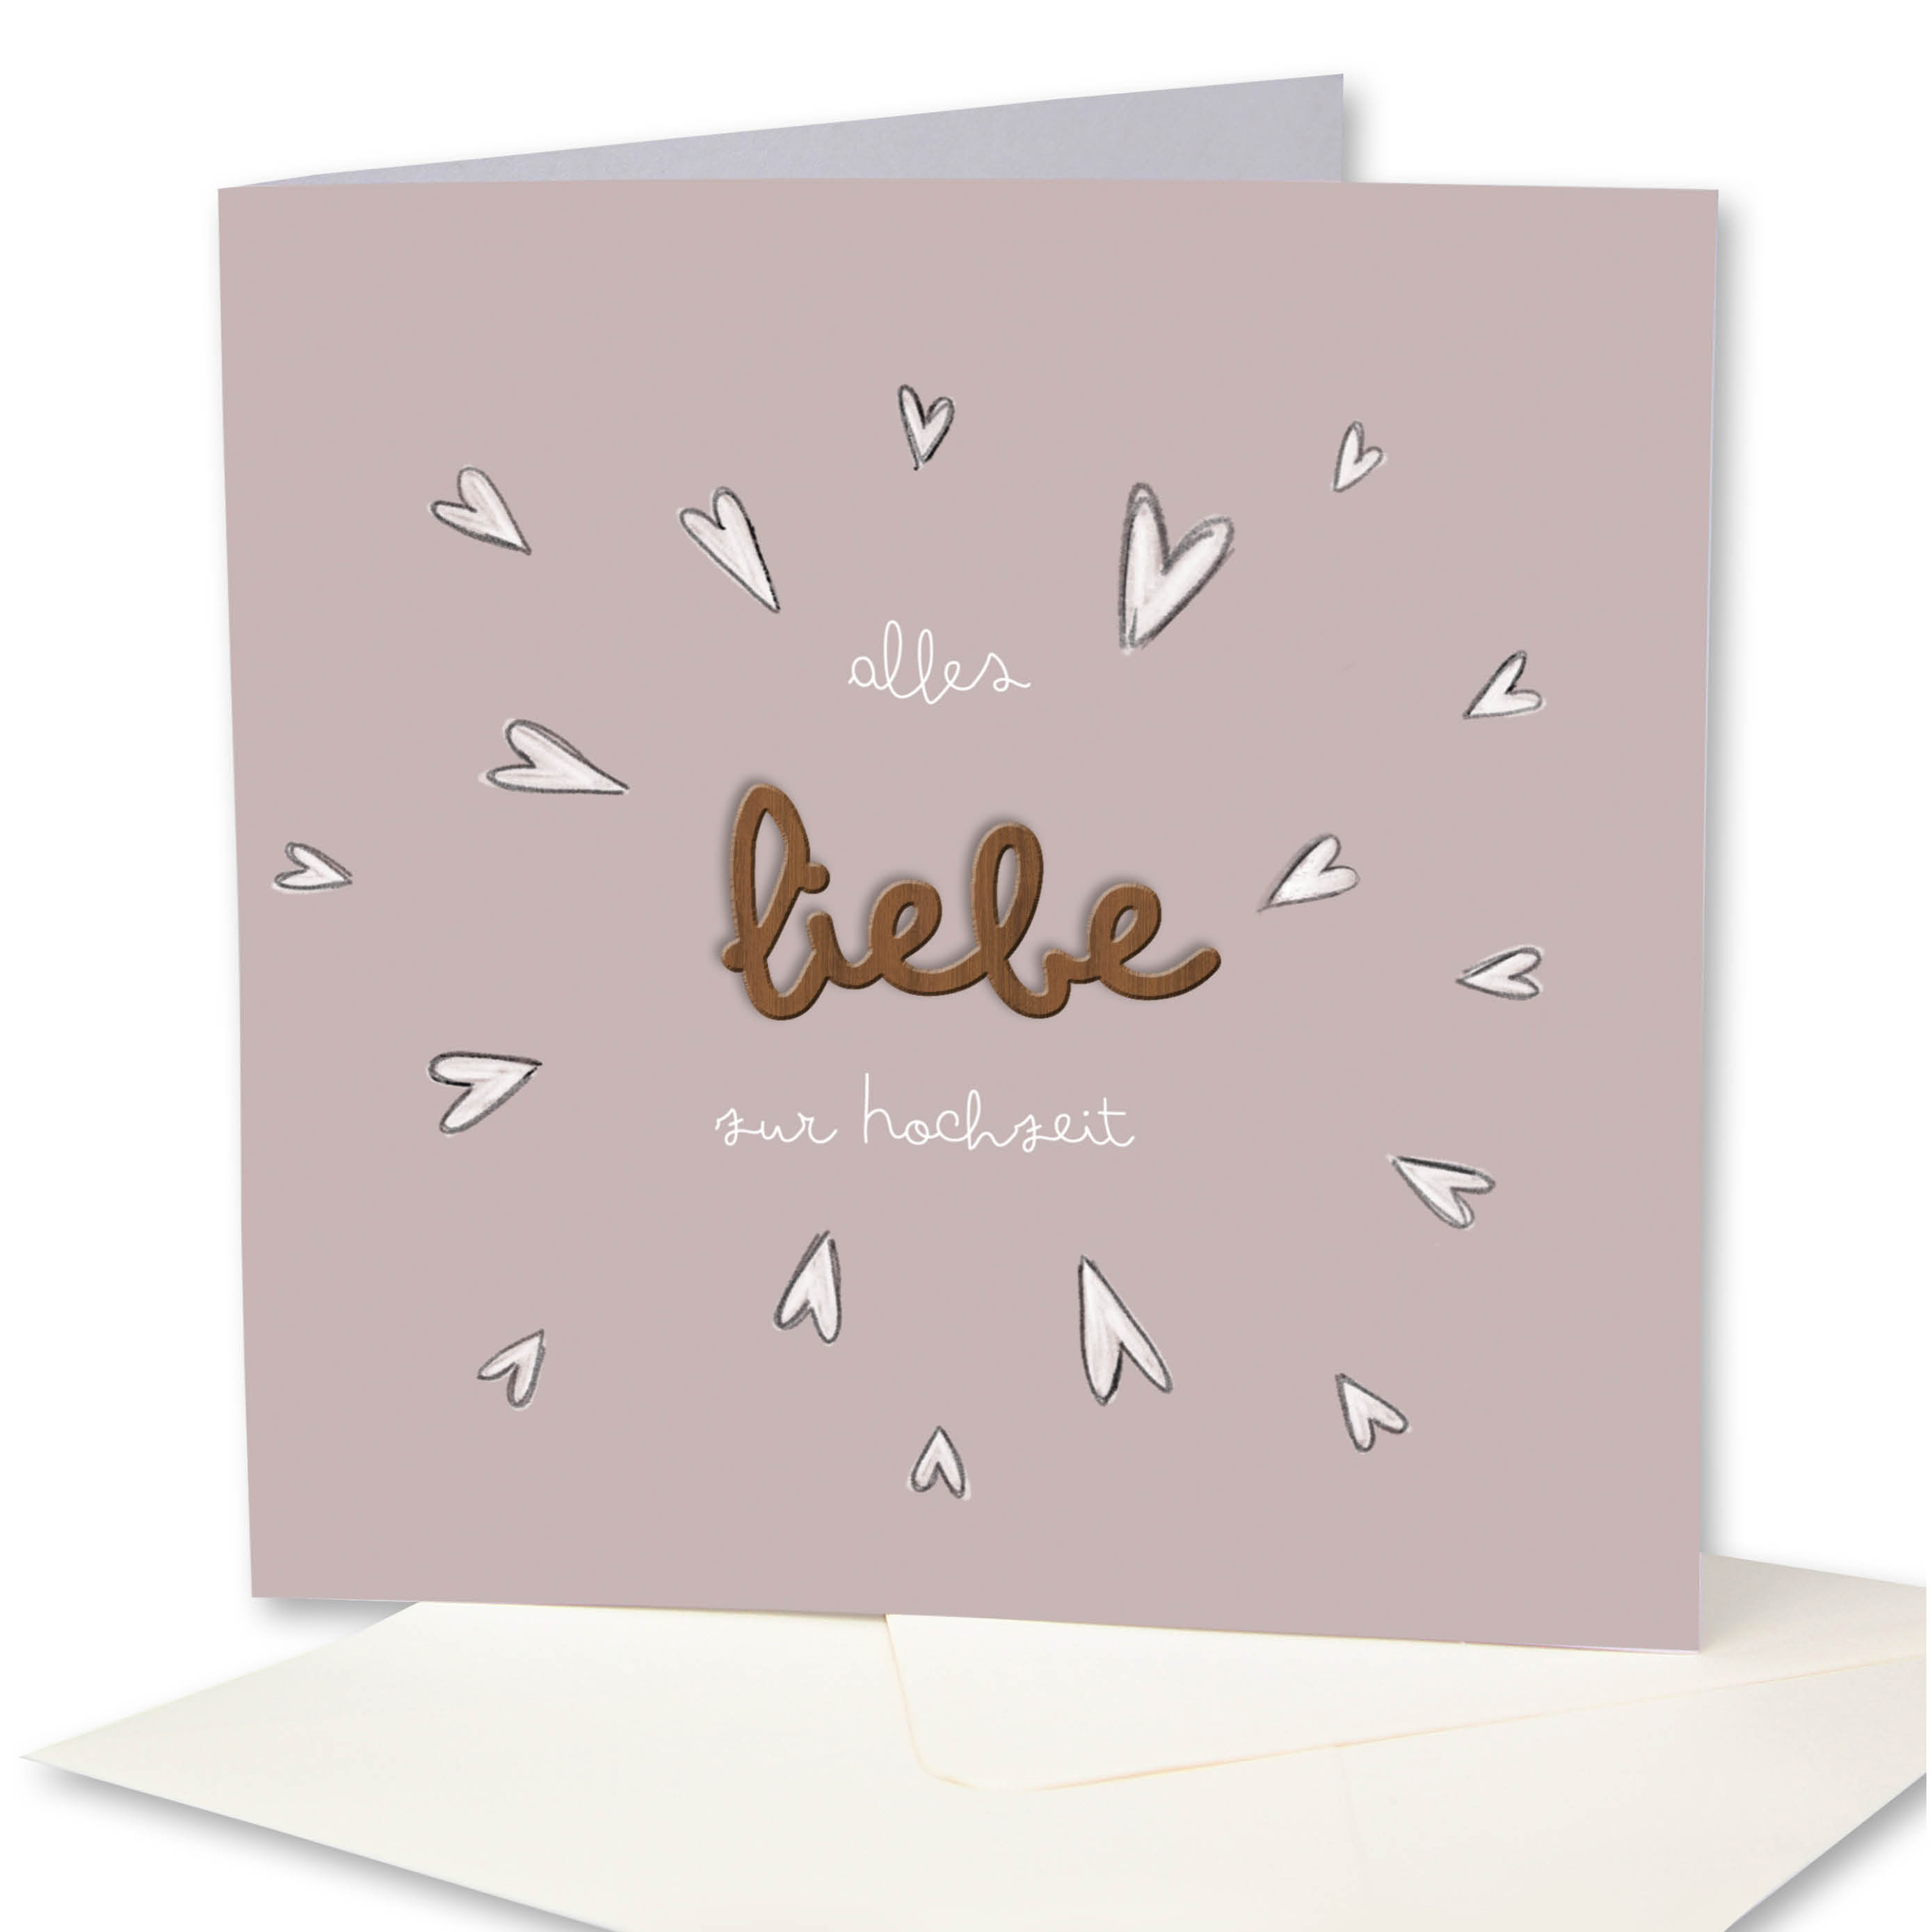 Holzgrusskarten - Hochzeitskarte "Alles liebe zur Hochzeit" aus Recyclingkarton mit aufgeklebtem "Liebe" aus Nussholz, Herzen